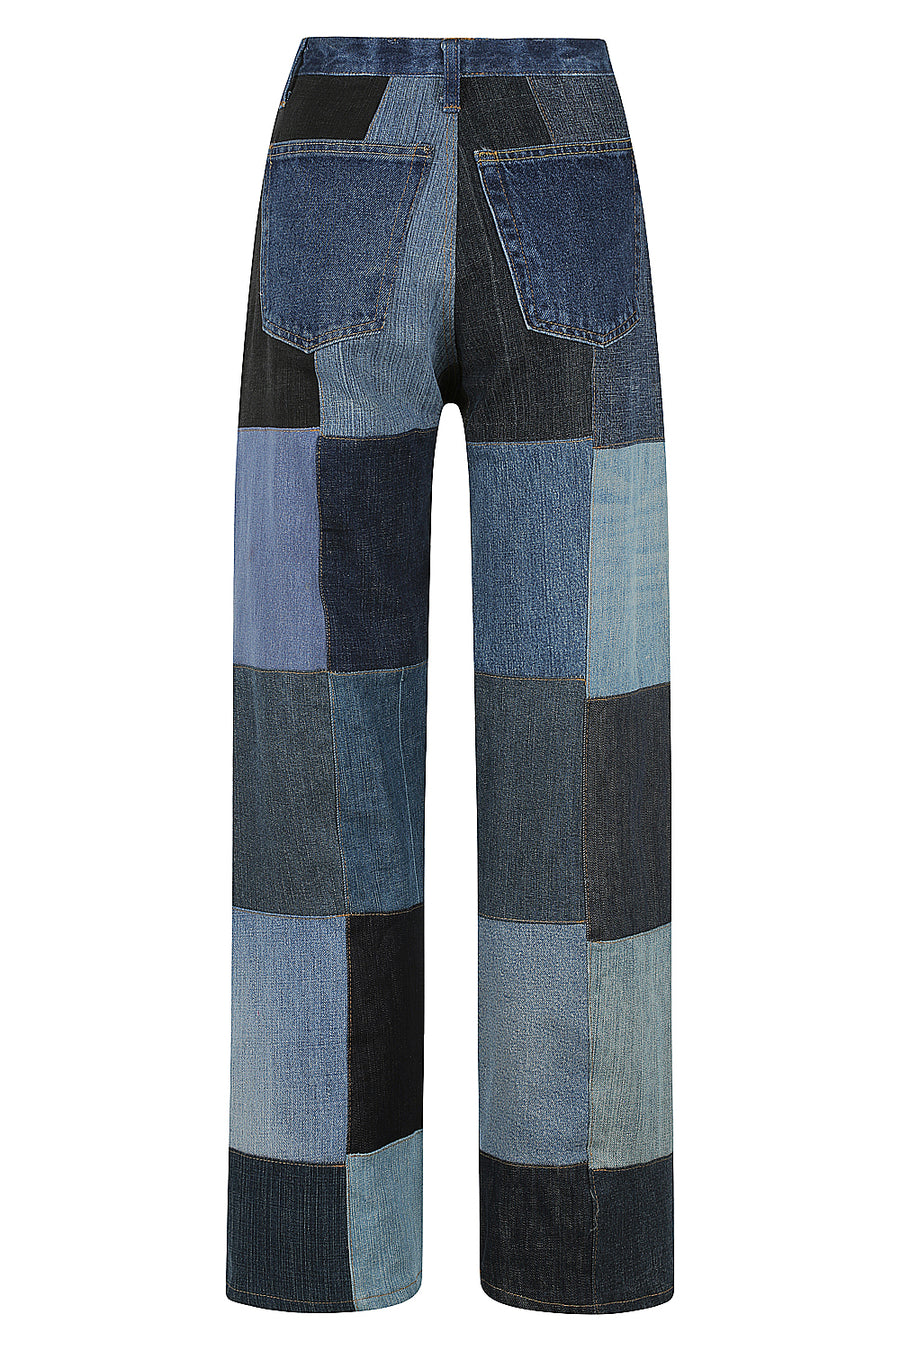 Vintage Patchwork Jeans